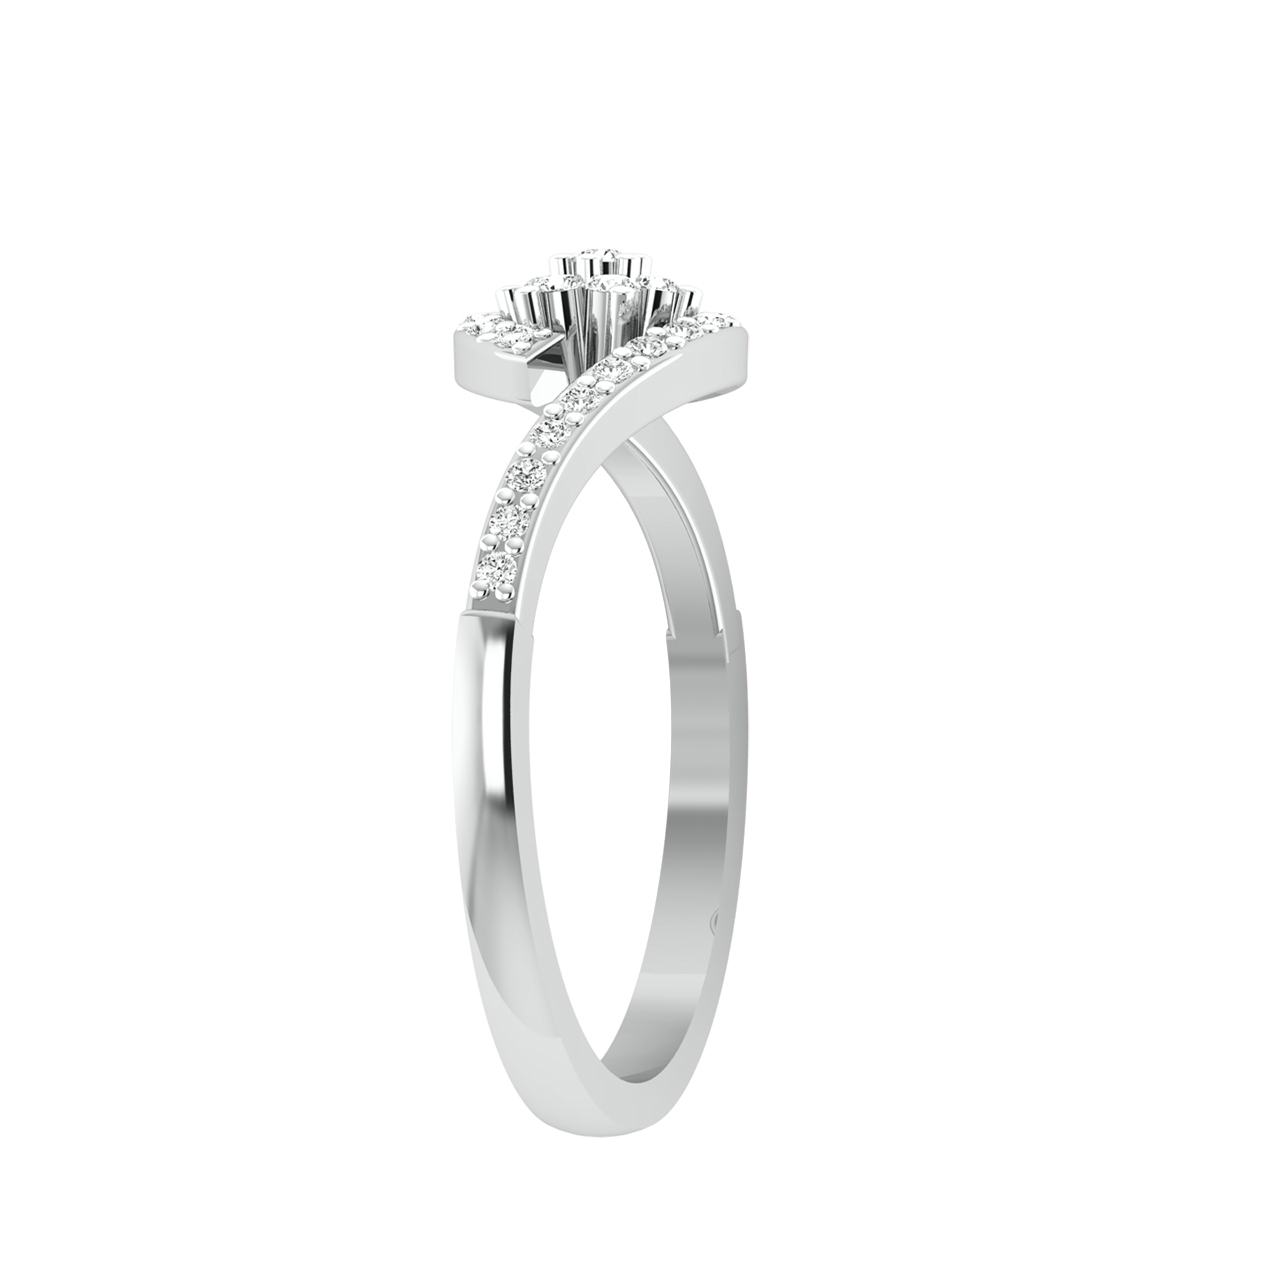 Reina Round Diamond Engagement Ring